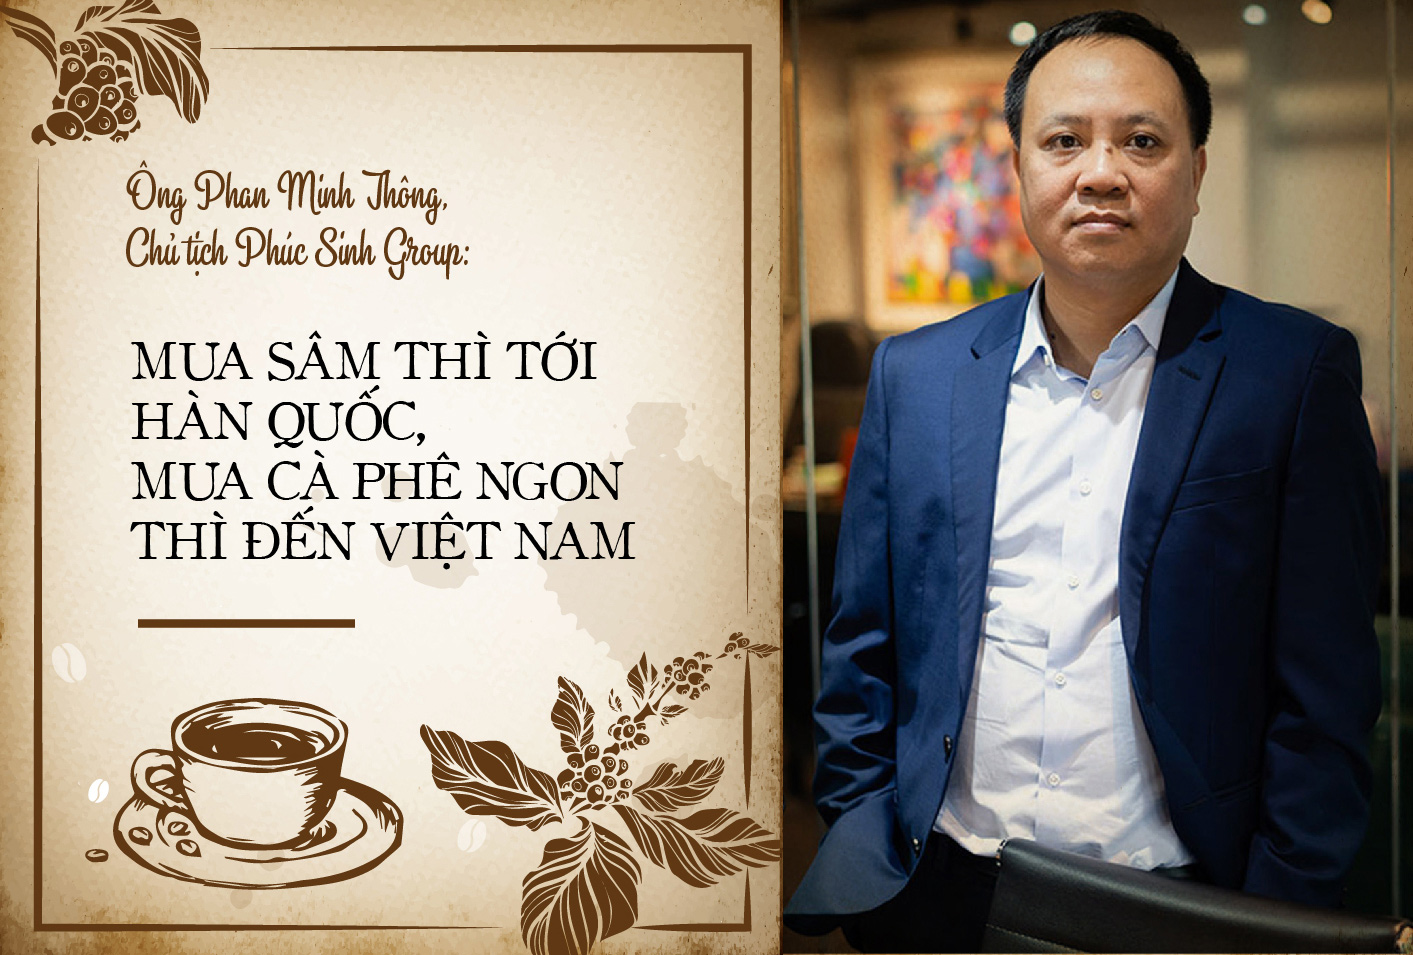 Phúc Sinh là một trong những công ty Việt Nam hiếm hoi kiên định đi theo con đường cung cấp duy nhất cà phê sạch và 100% nguyên chất